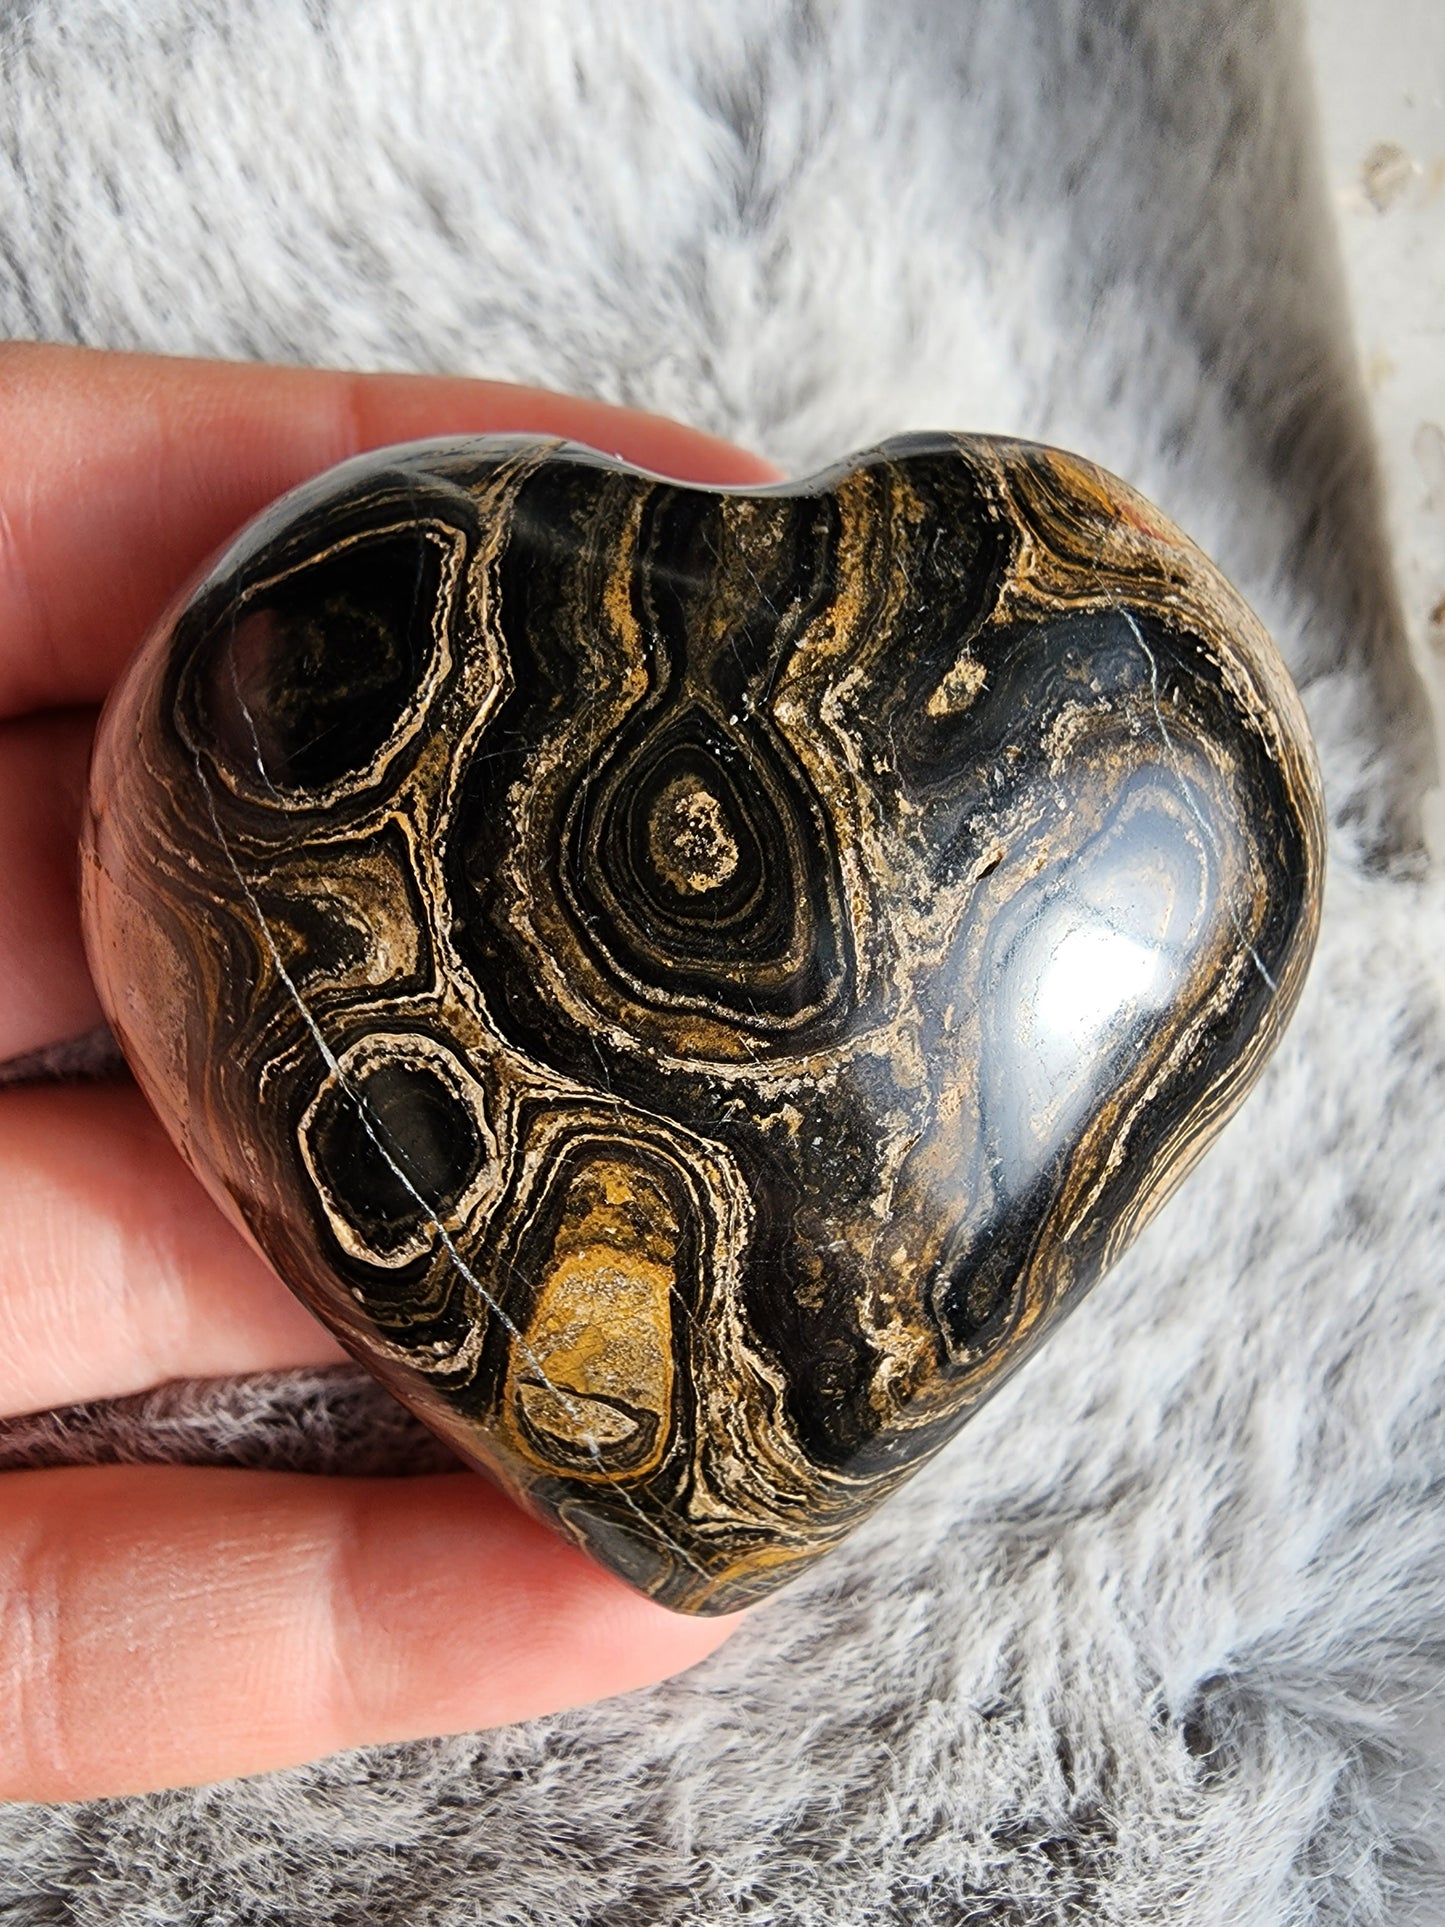 Stromatolite Heart